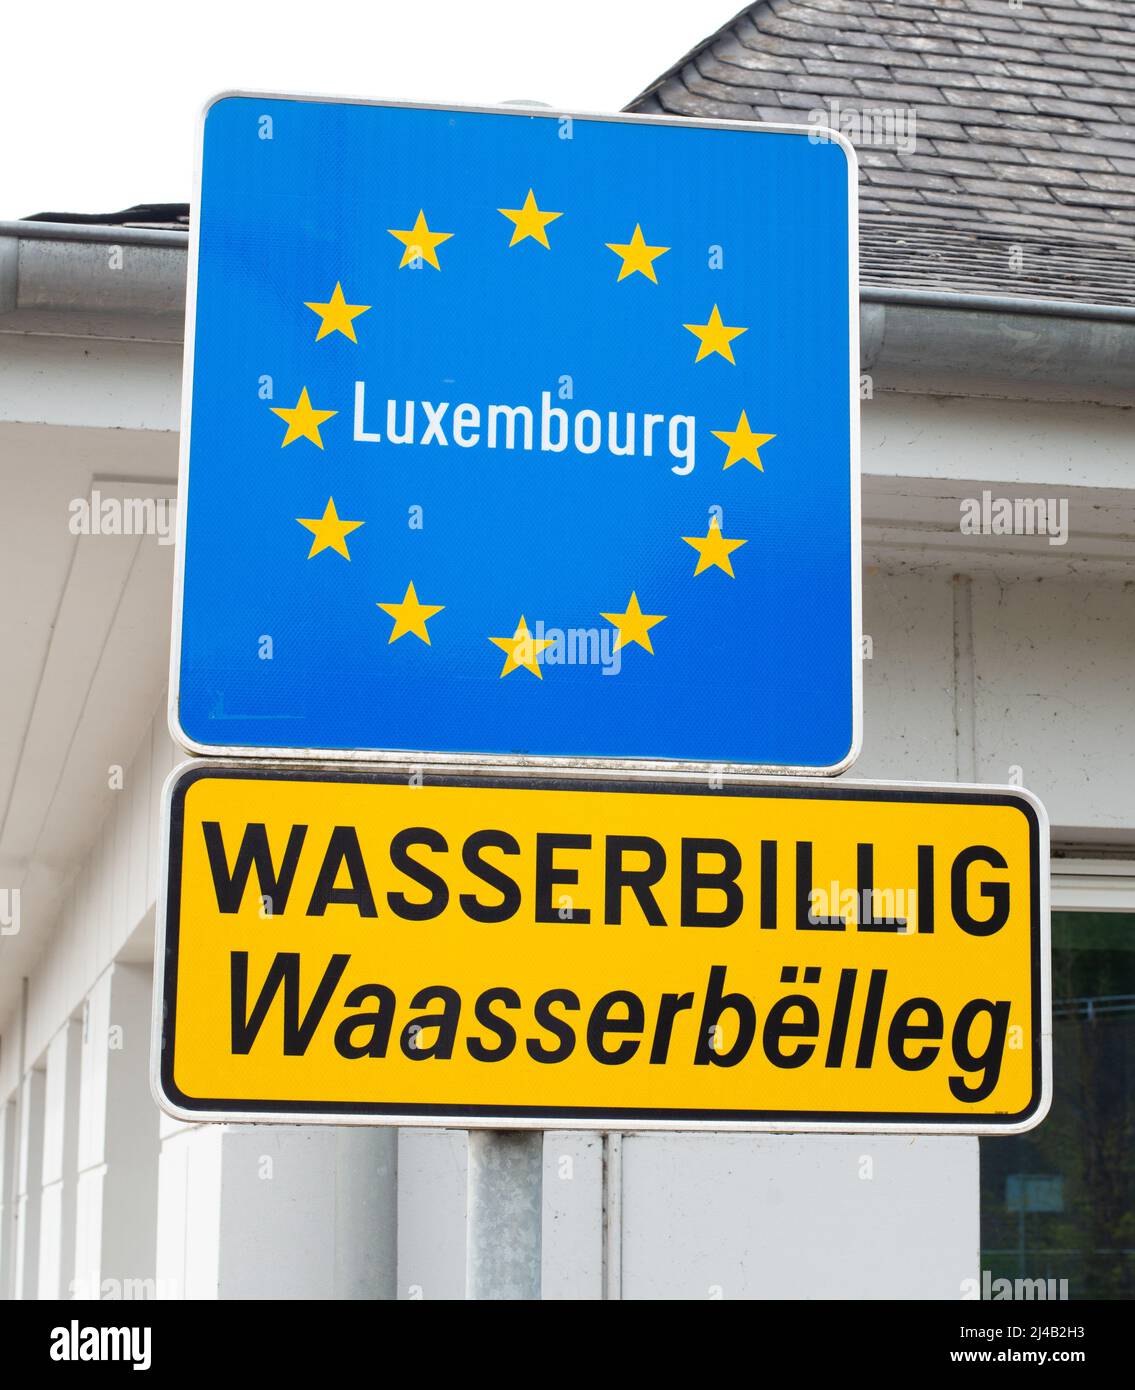 Frontera entre Luxemburgo y Alemania, signo de la bandera de la Unión Europea, Wasserbillig ciudad en la frontera, punto de control del Benelux país Foto de stock